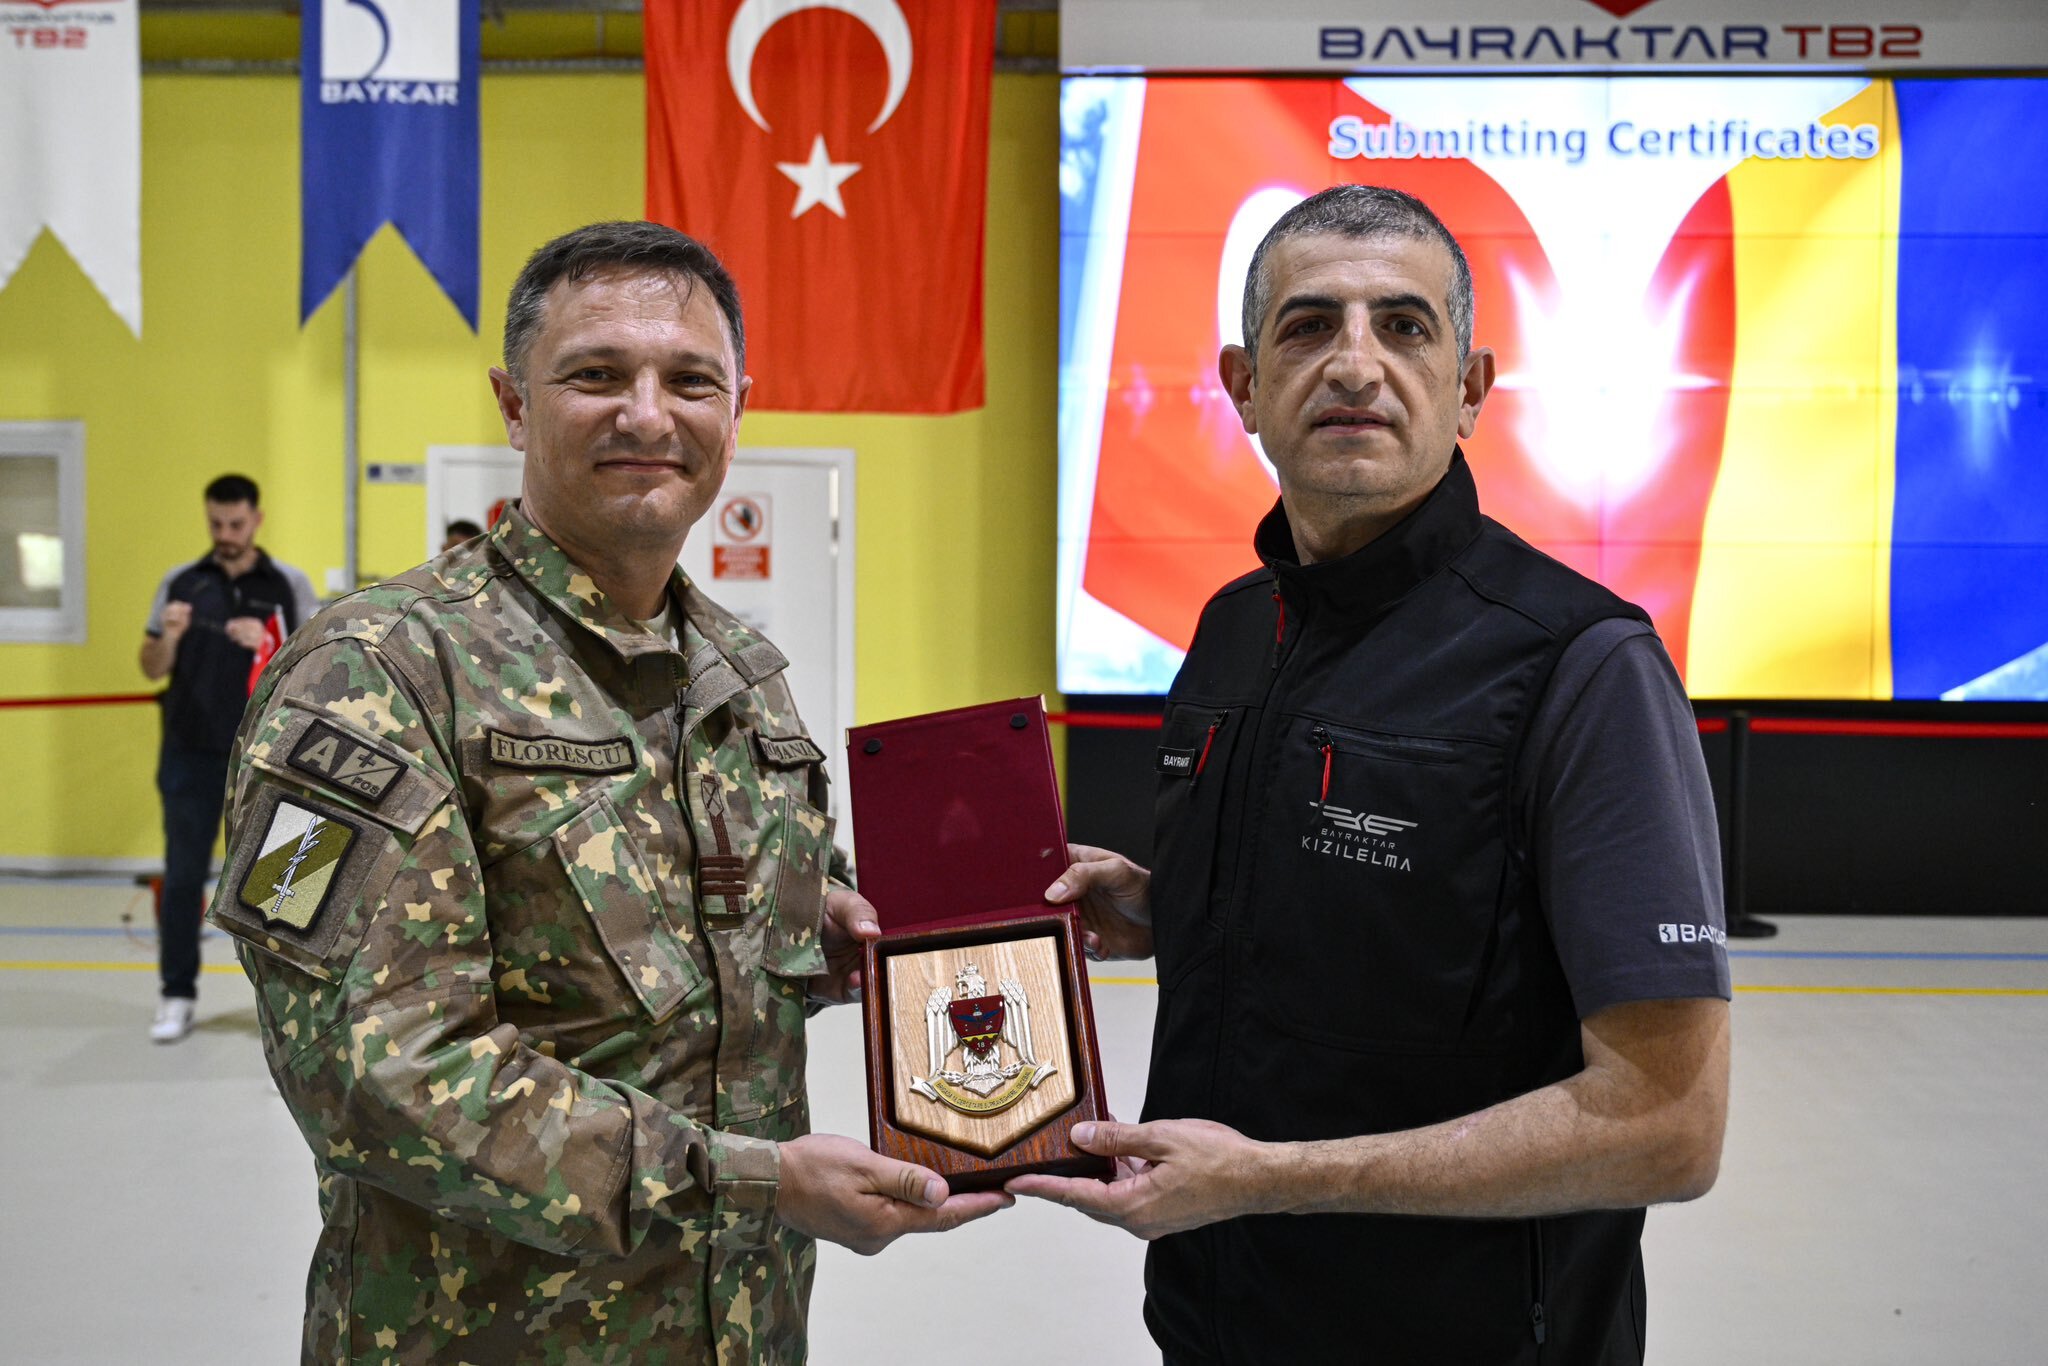 Romanian troops graduate in UAV ops, strengthening Türkiye-Romania defense ties